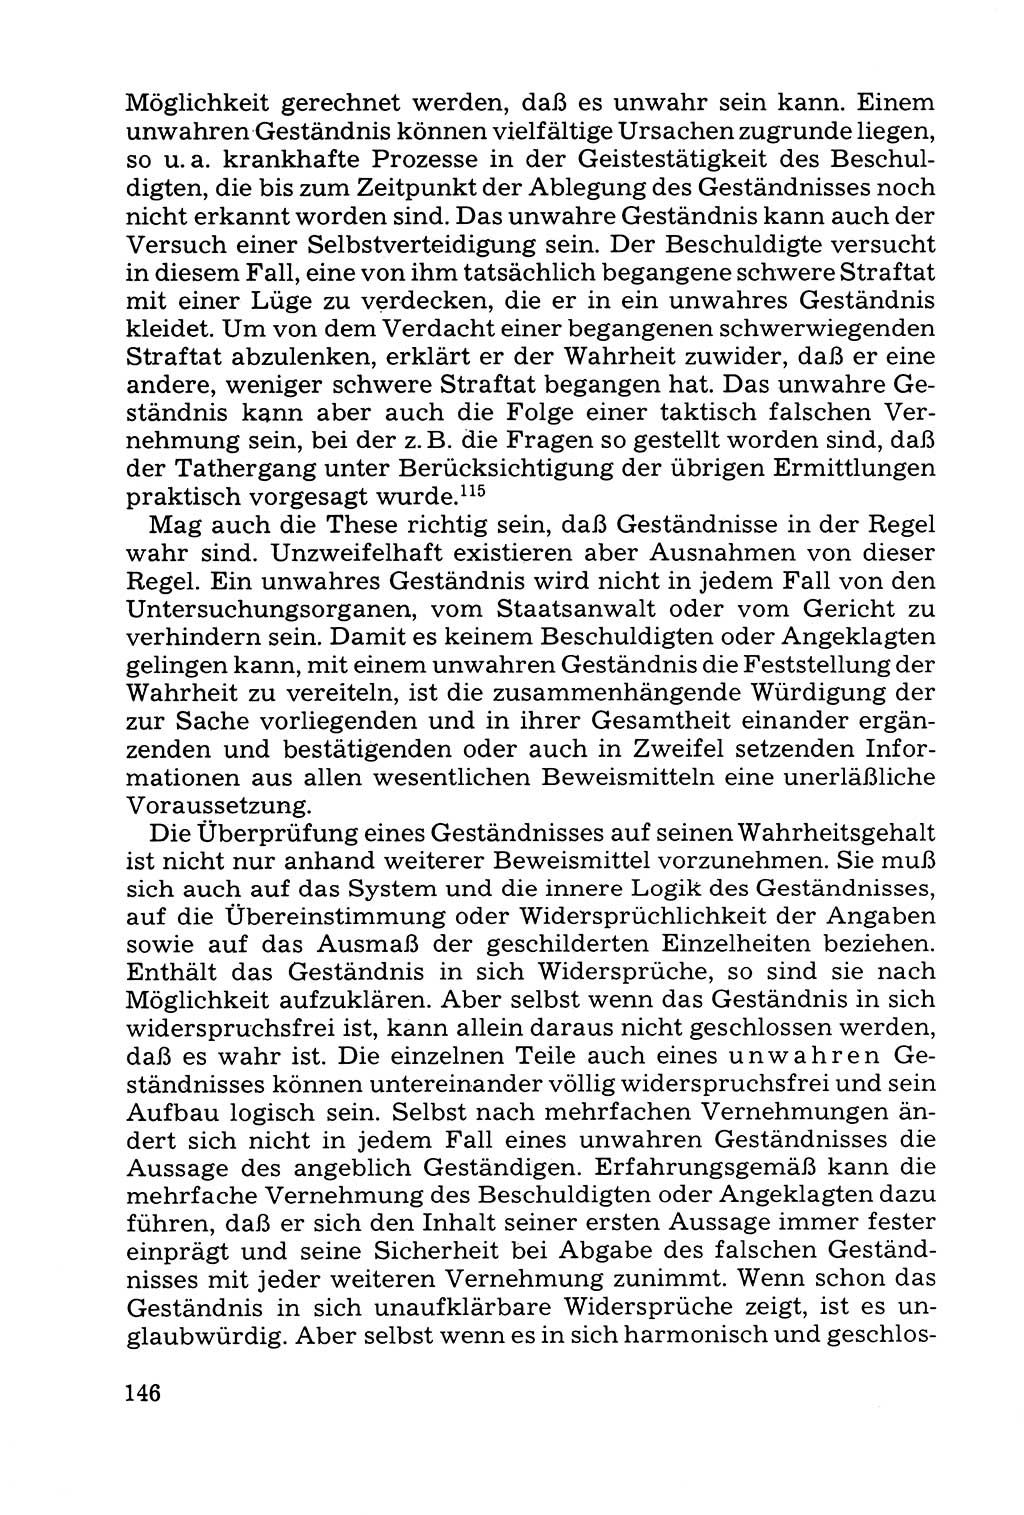 Grundfragen der Beweisführung im Ermittlungsverfahren [Deutsche Demokratische Republik (DDR)] 1980, Seite 146 (Bws.-Fhrg. EV DDR 1980, S. 146)